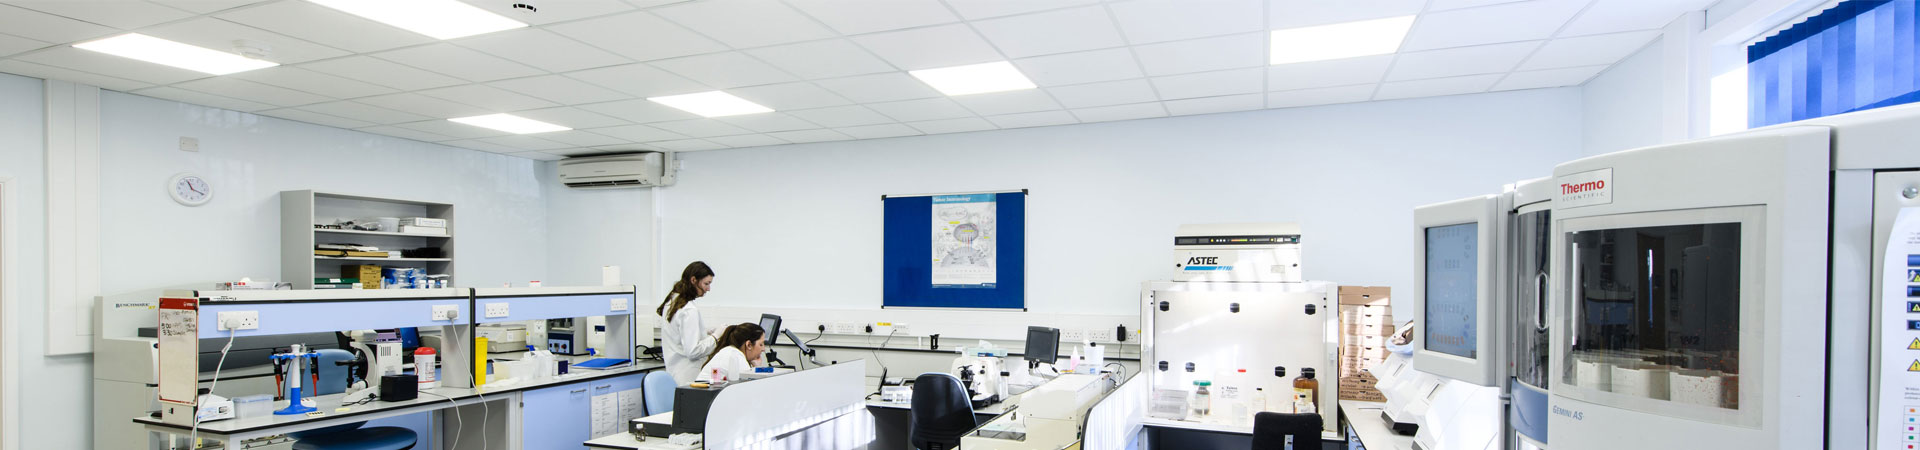 Tamlite Princess Elizabeth Hospital Guernsey Healthcare LED Lighting Case Study lab room header